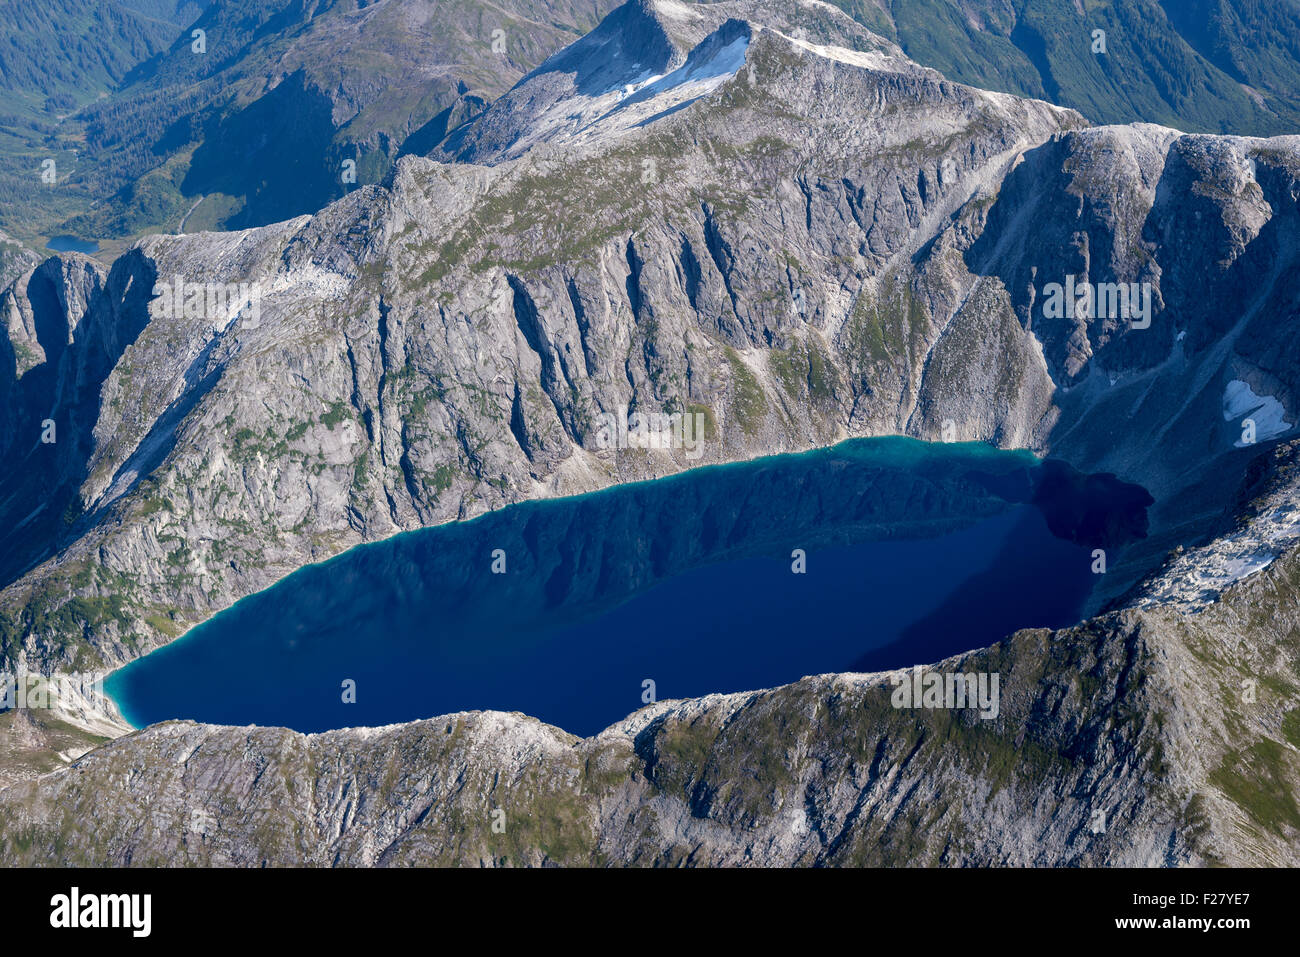 Indigo Lake, un lago alpino en las montañas de la isla de Baranof, Alaska. Foto de stock